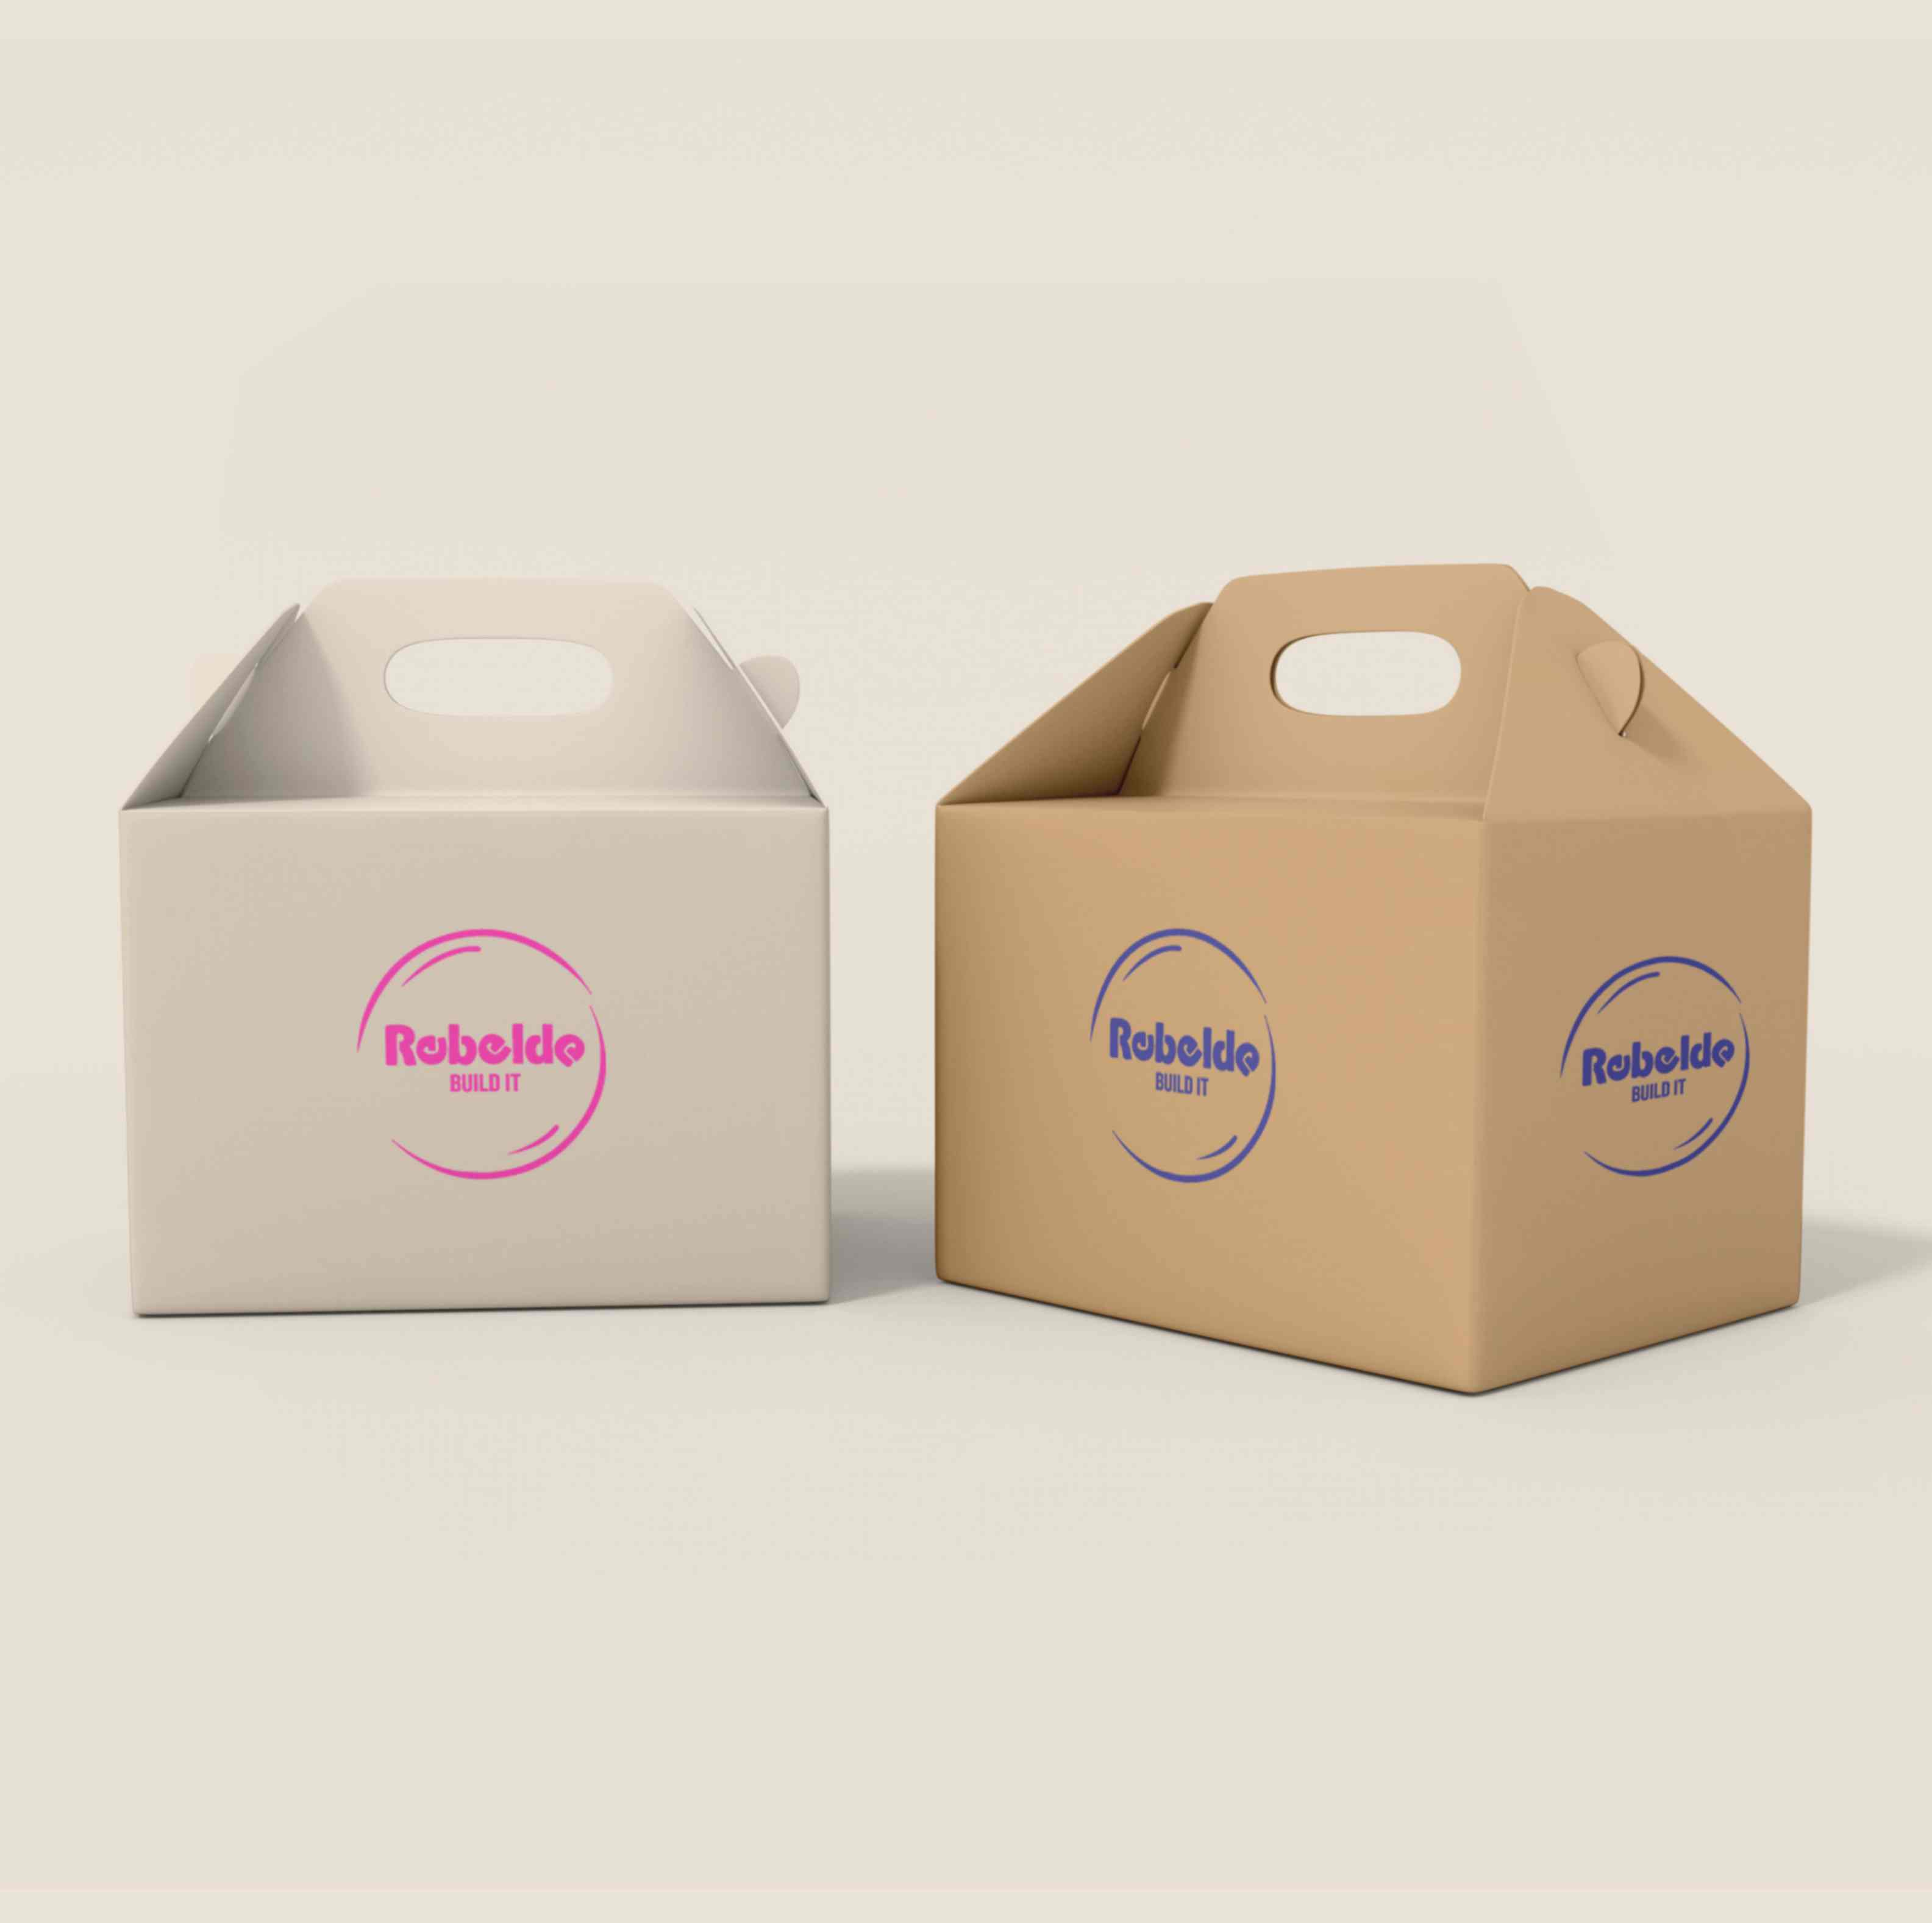 Printed cardboard gift boxes – Rebelde Build it